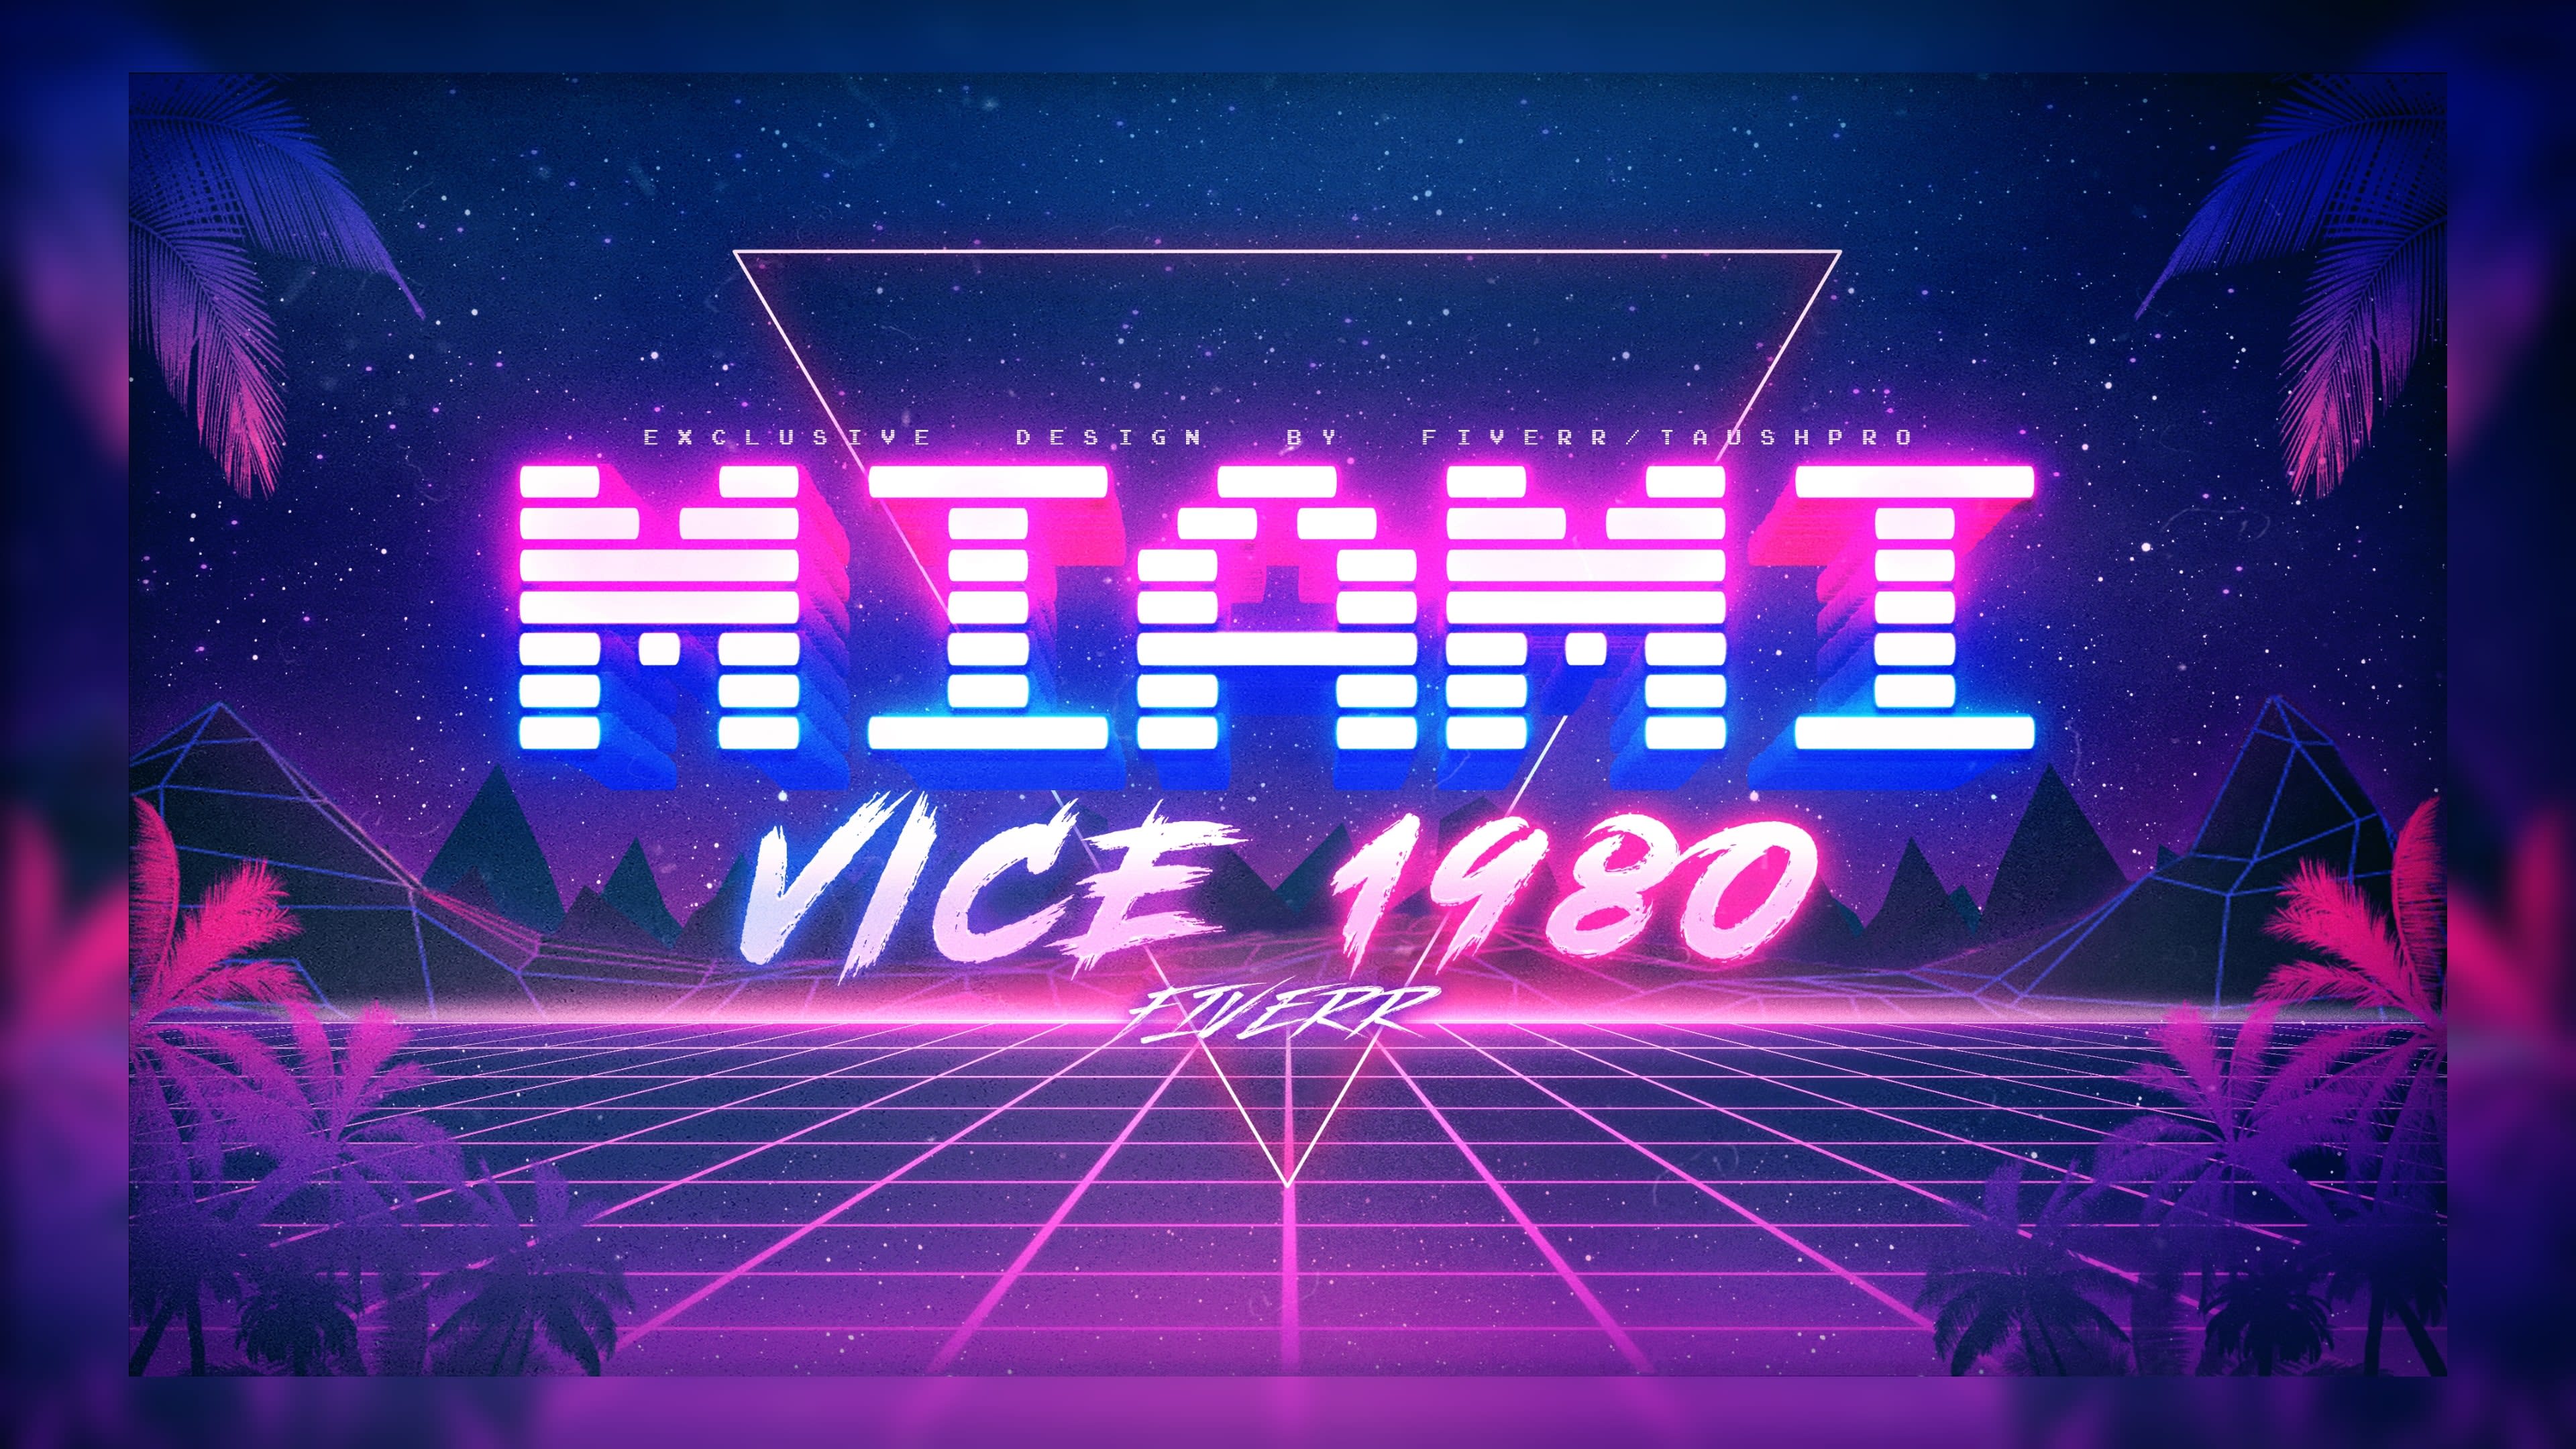 The Miami Vice Effect